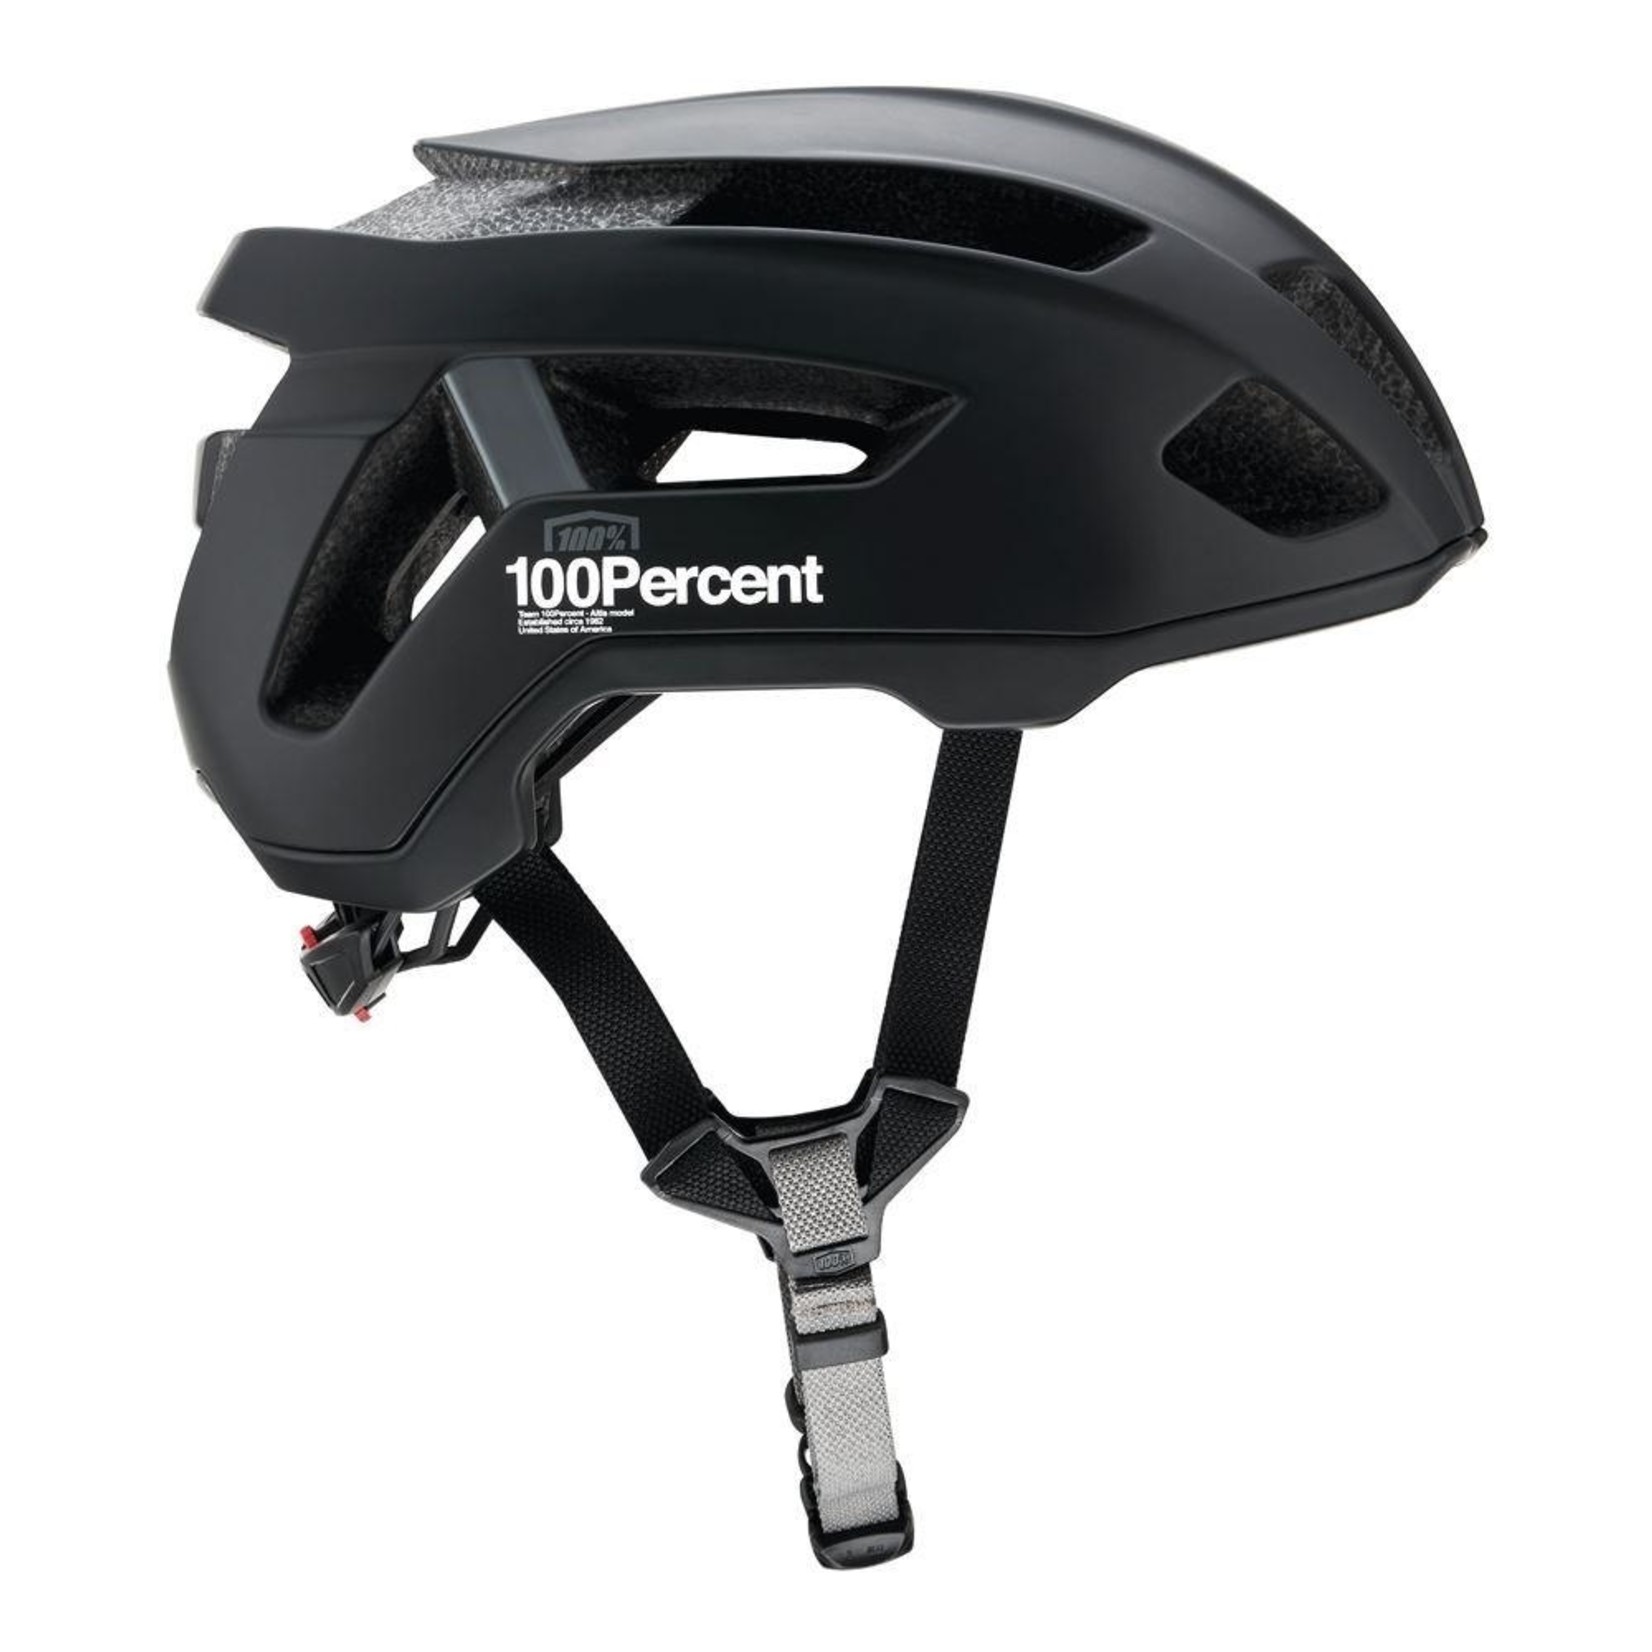 FE sports 100% ALTIS Gravel Bike Helmet - Black